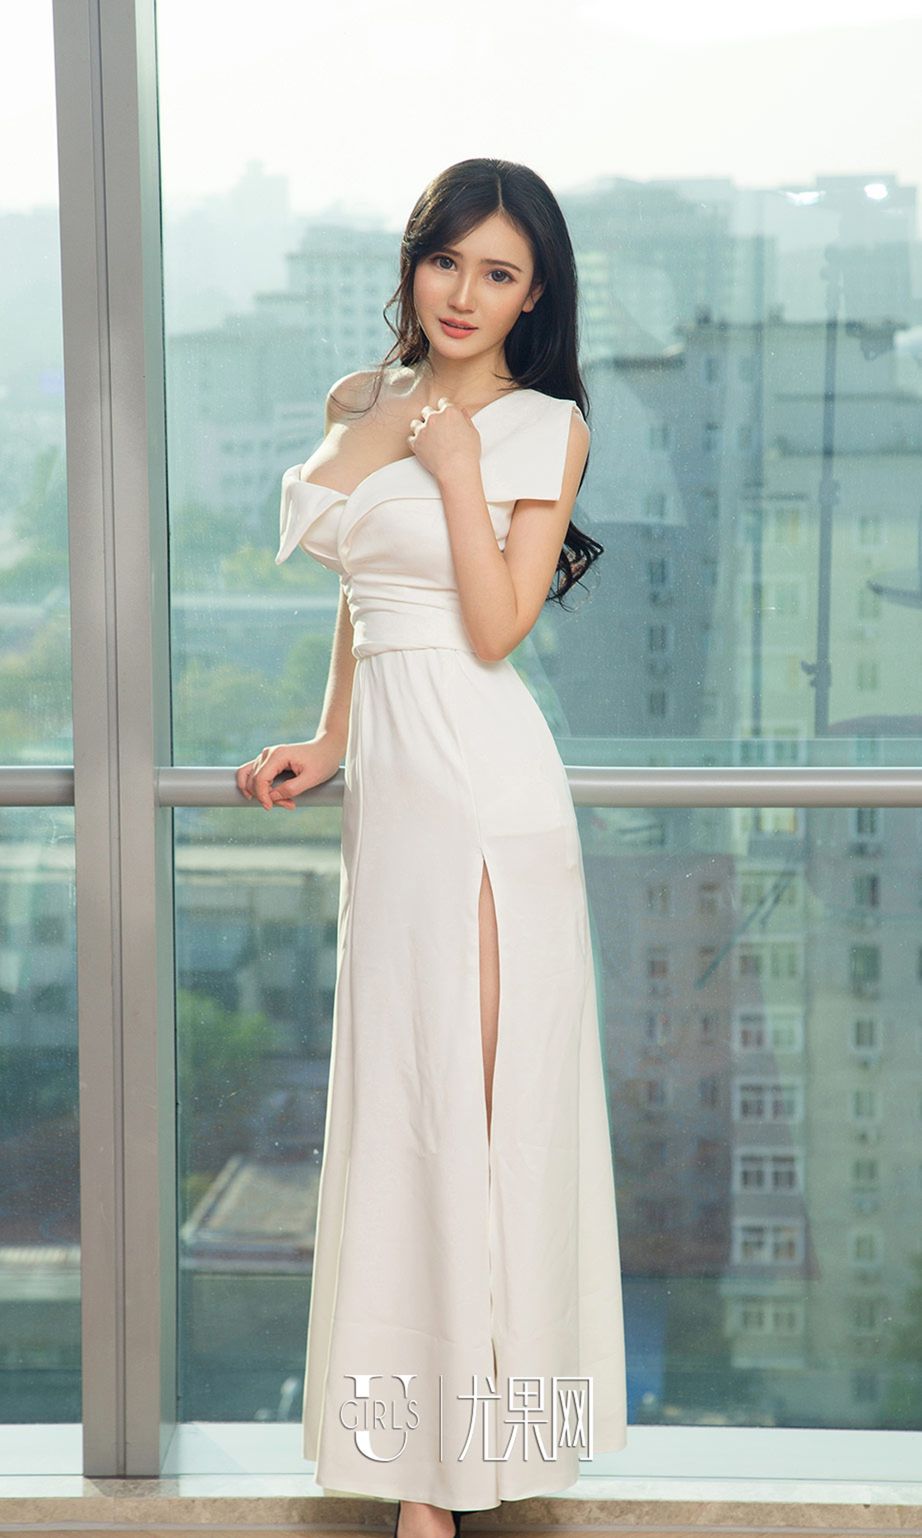 尤果网美女模特林诗茵日式和服连体吊带坚挺爆乳性感写真